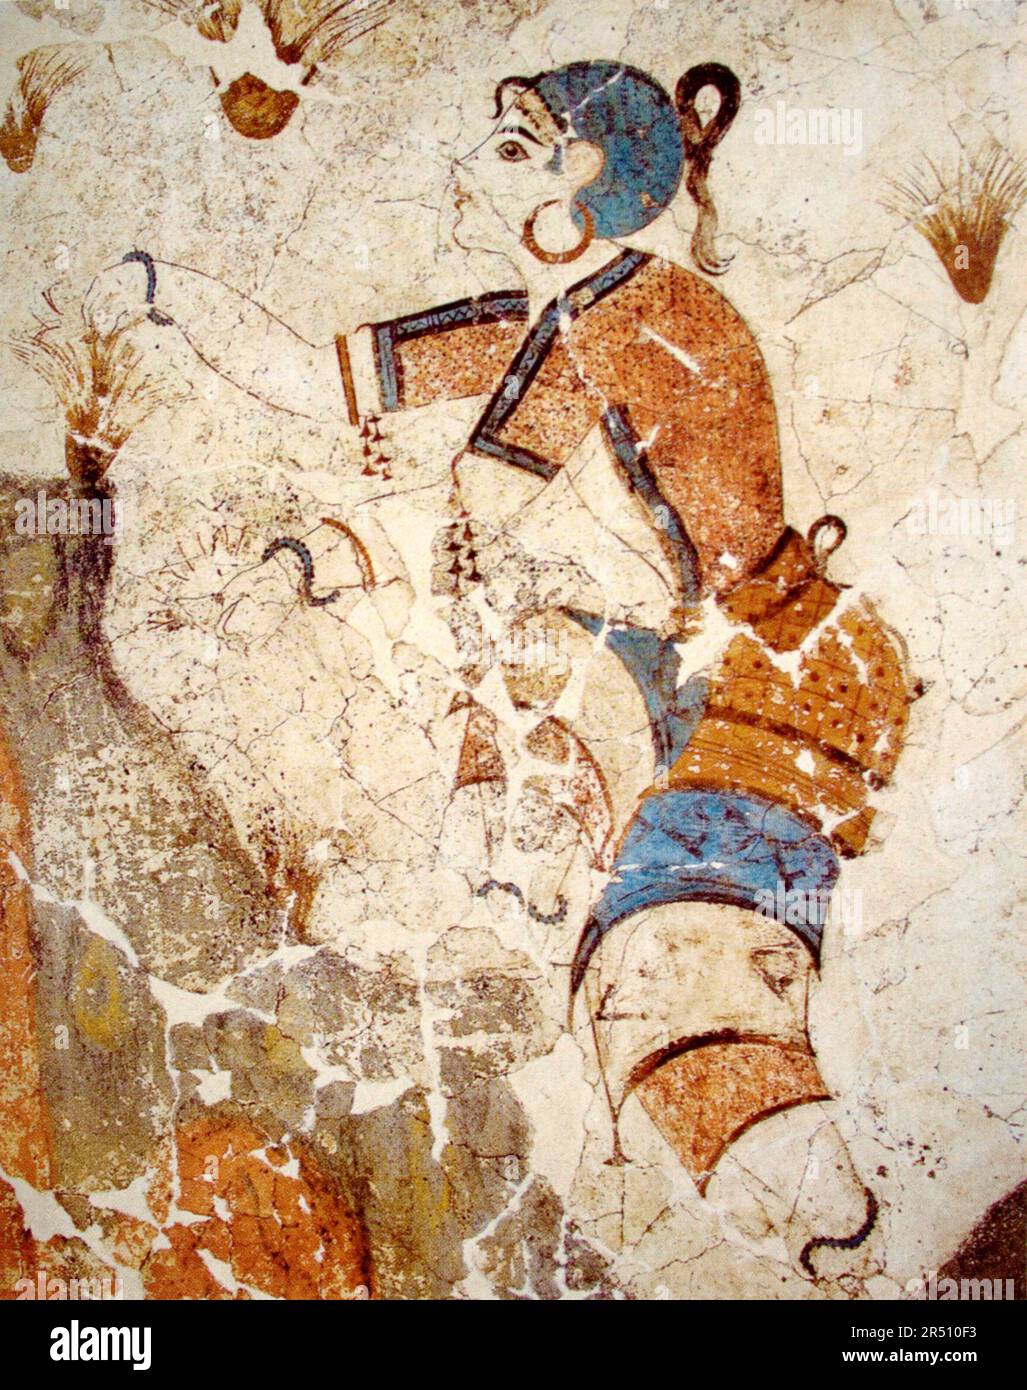 Safran Gatherer, Fresco, Akrotiri, Griechenland - 1600-1500 v. Chr Stockfoto